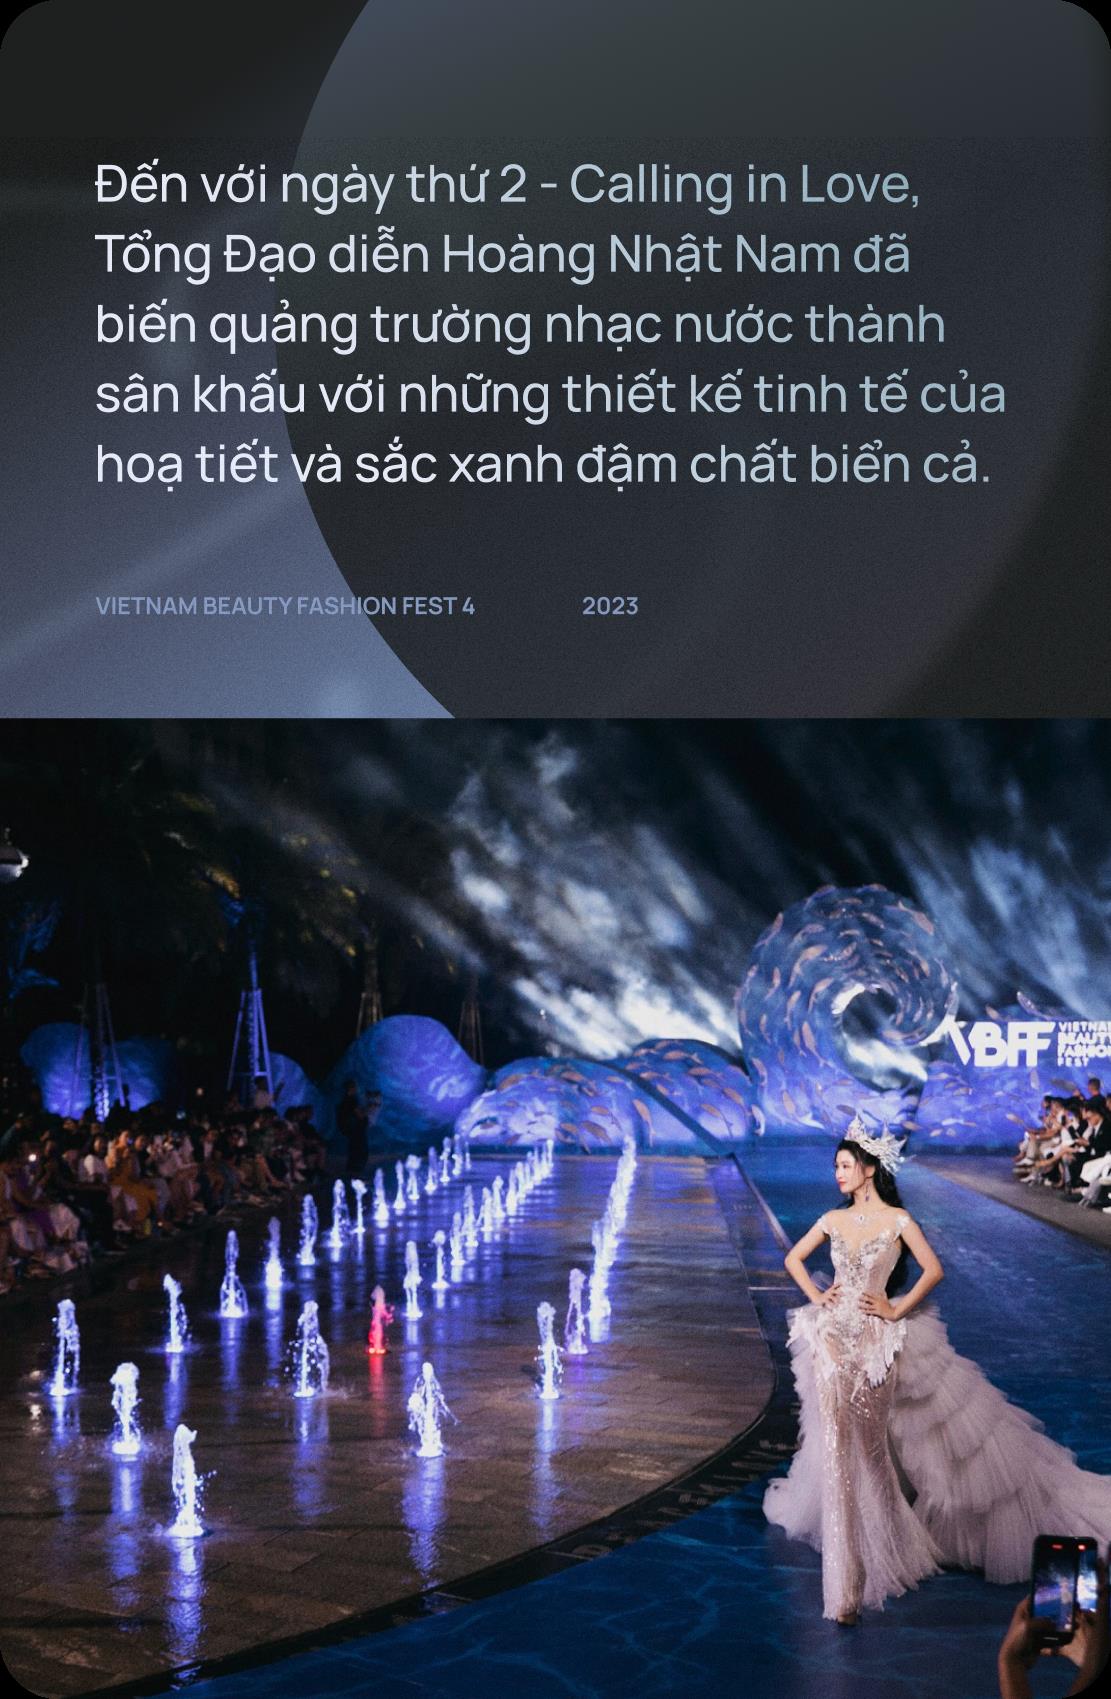 Hai đêm Vietnam Beauty Fashion Fest 4 mãn nhãn quy tụ dàn Hậu đình đám qua bàn tay dàn dựng của tổng đạo diễn Hoàng Nhật Nam - Ảnh 5.